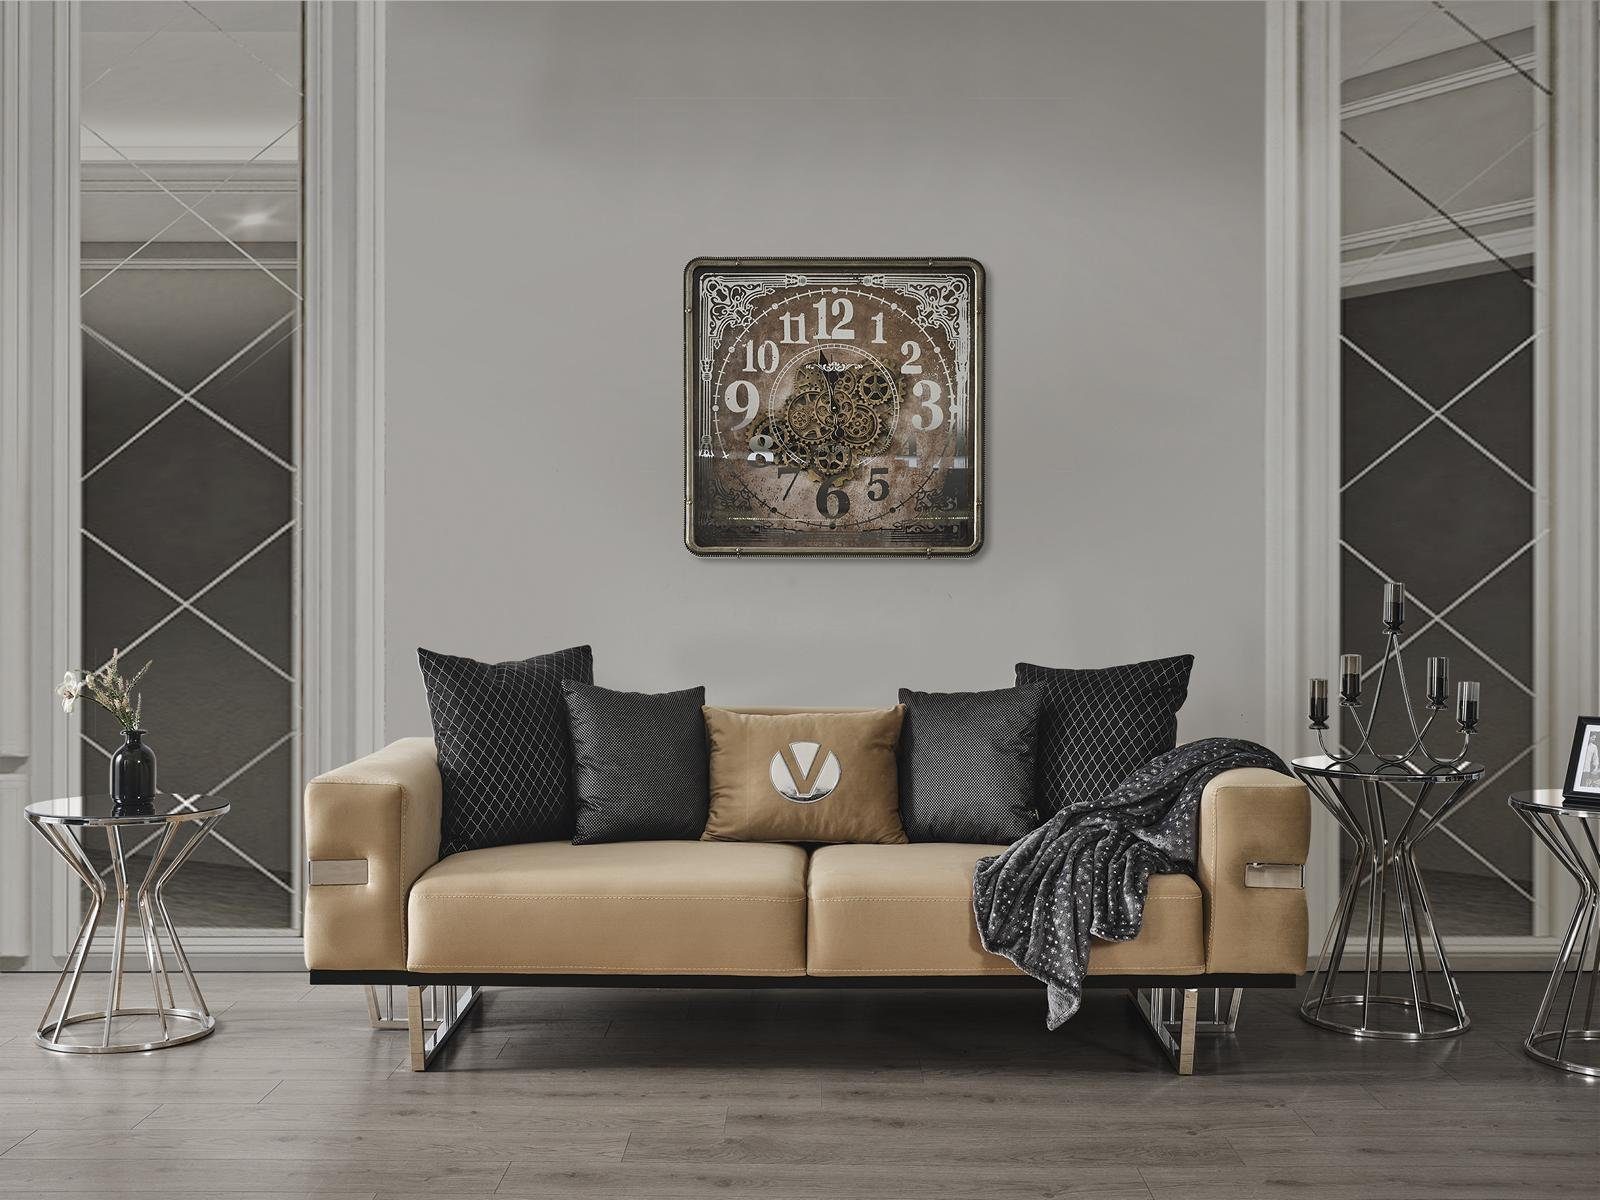 JVmoebel Sofa Luxus Couch mit Edelstahl Füßen Sitz Polster Designer Couchen, Made in Europa | Alle Sofas